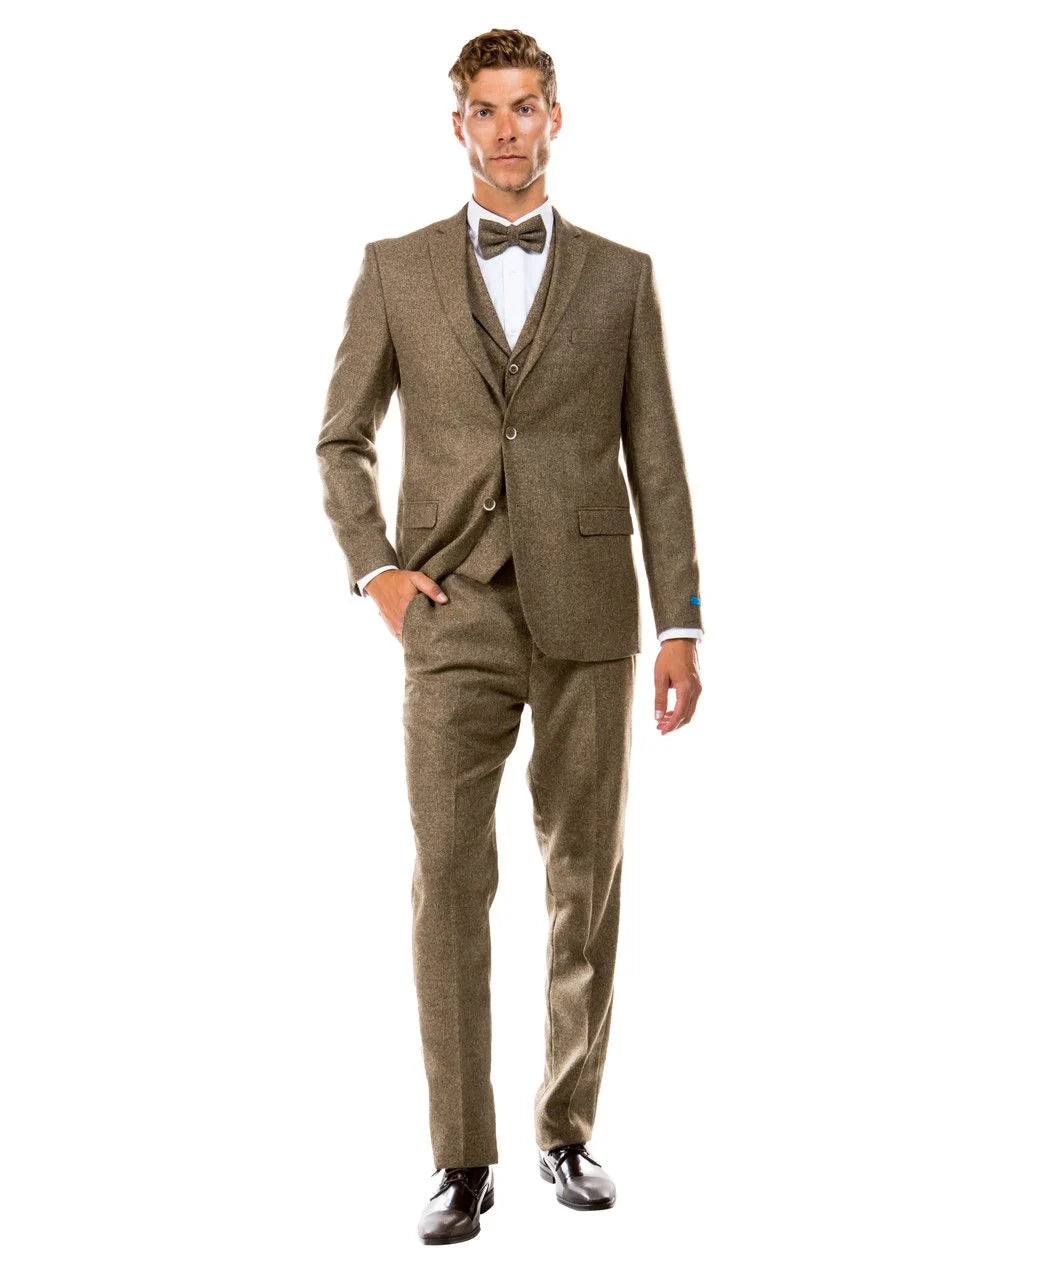 Sean Alexander Men's Tweed 3-Piece Executive Suit